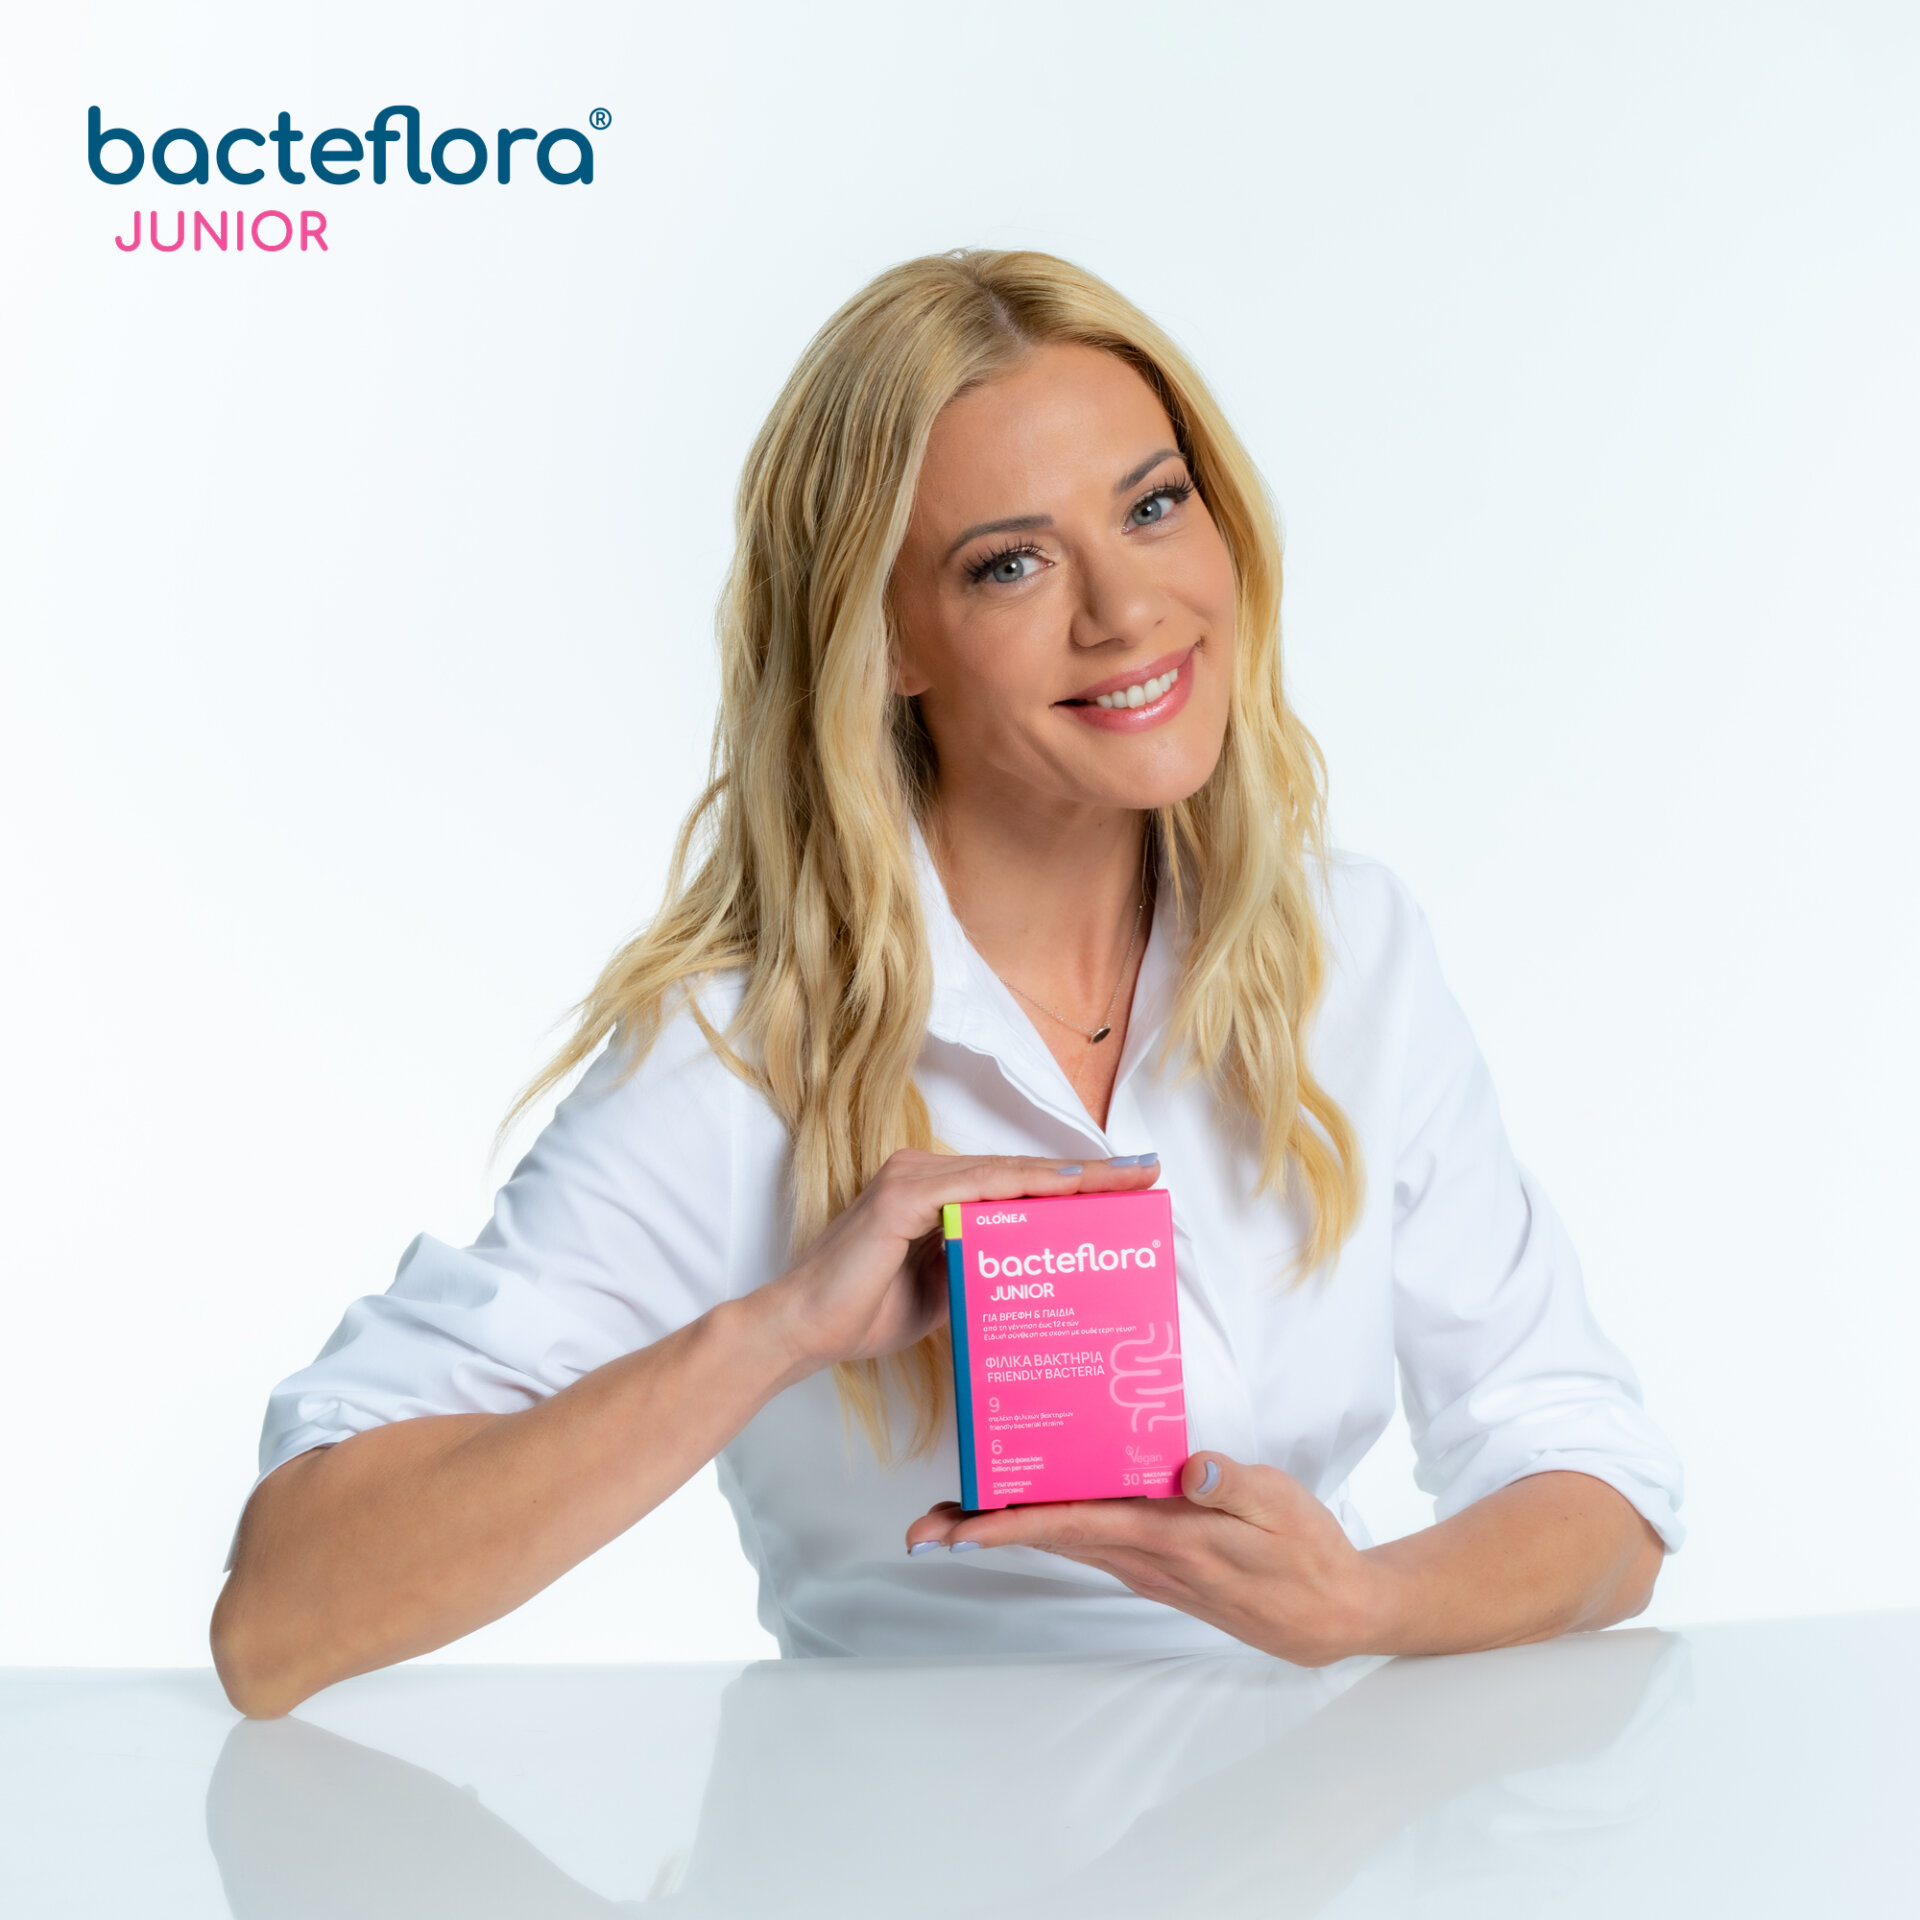 Η Ζέτα Μακρυπούλια, το «πρόσωπο» της OLONEA, κρατάει στα χέρια της μια συσκευασία του συμπληρώματος προβιοτικών bacteflora® JUNIOR της OLONEA, για βρέφη και παιδιά.